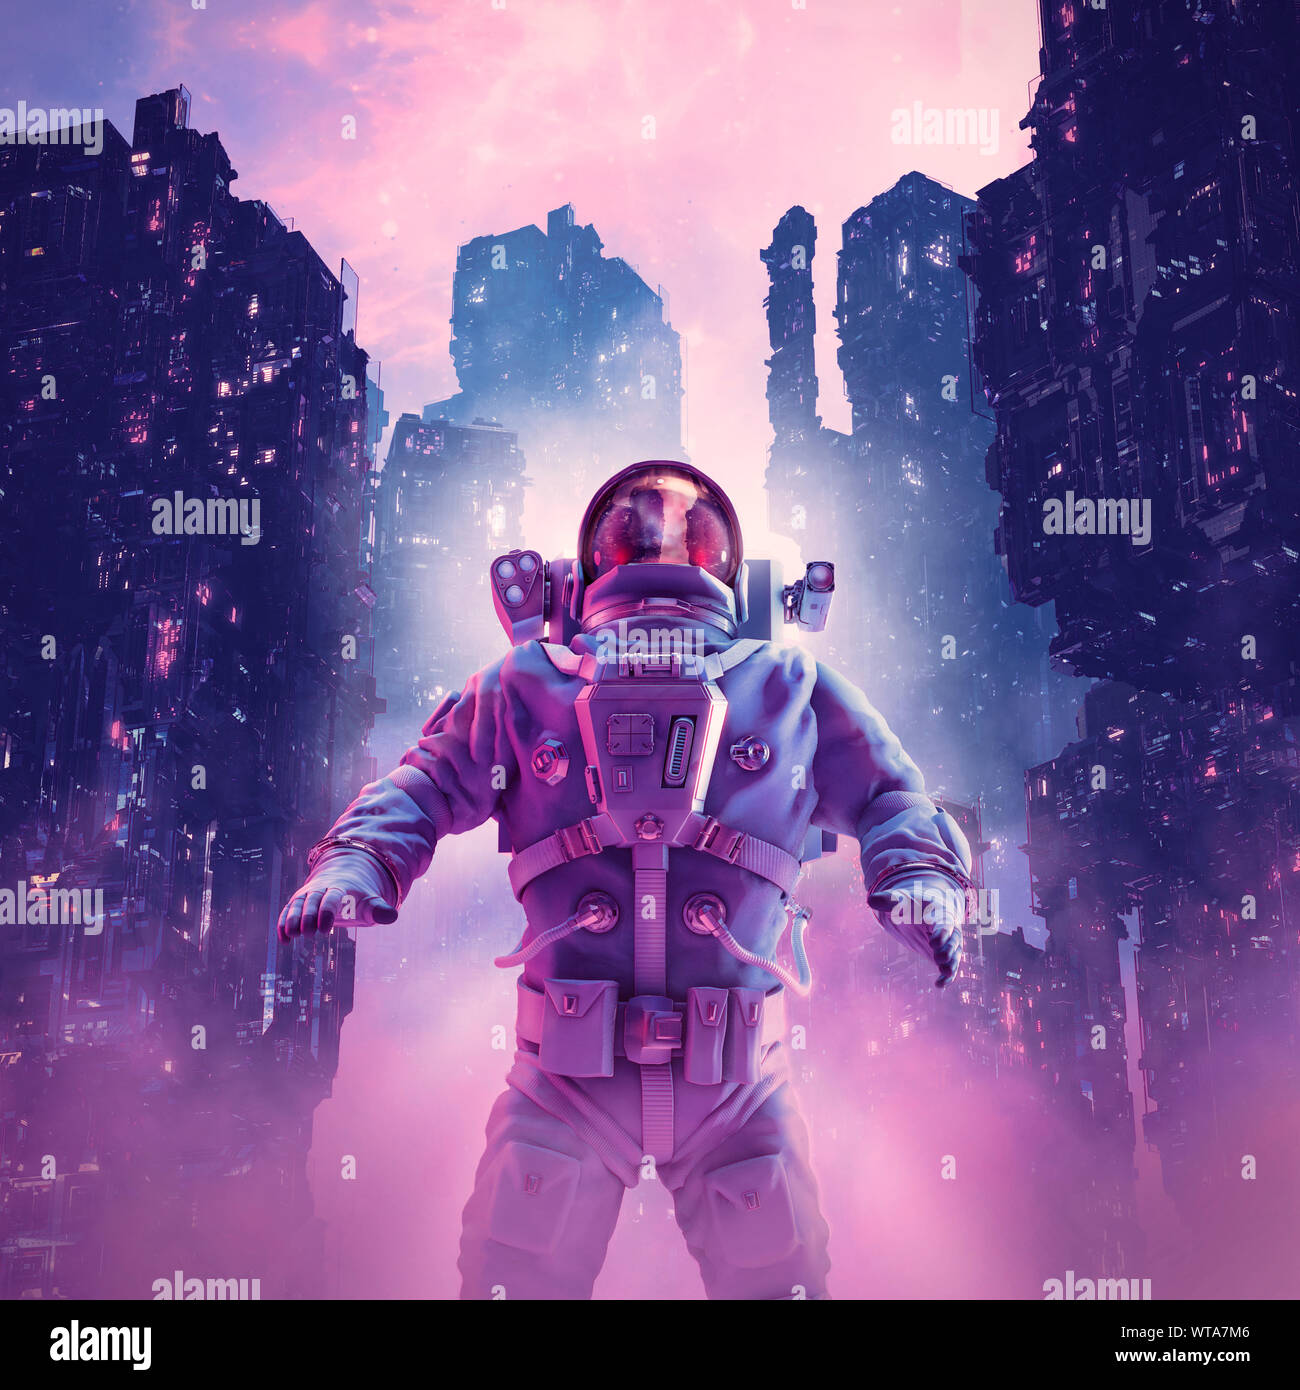 Neon night astronaut / 3D illustration of astronaut in futuristic neon lit cyberpunk city Stock Photo